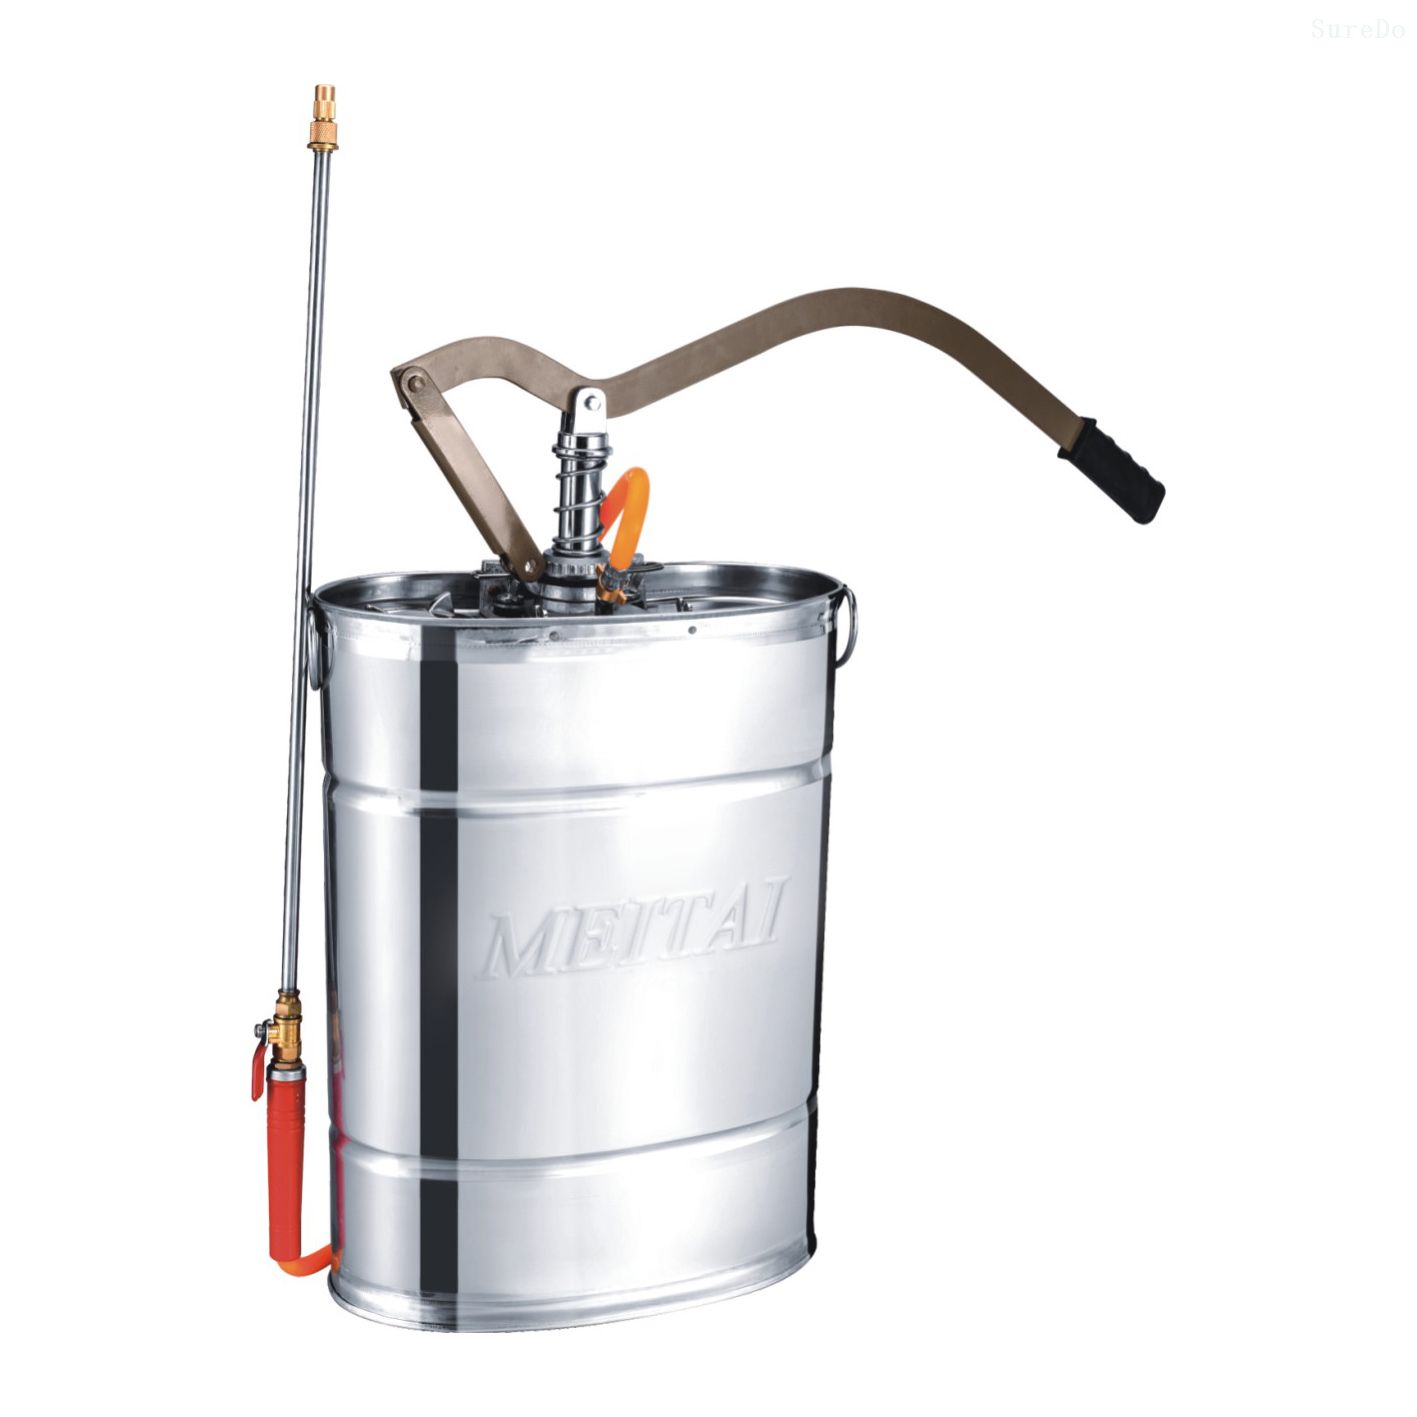 14-18 Liter High Quality Pull Down Stainless Steel Knapsack Sprayer